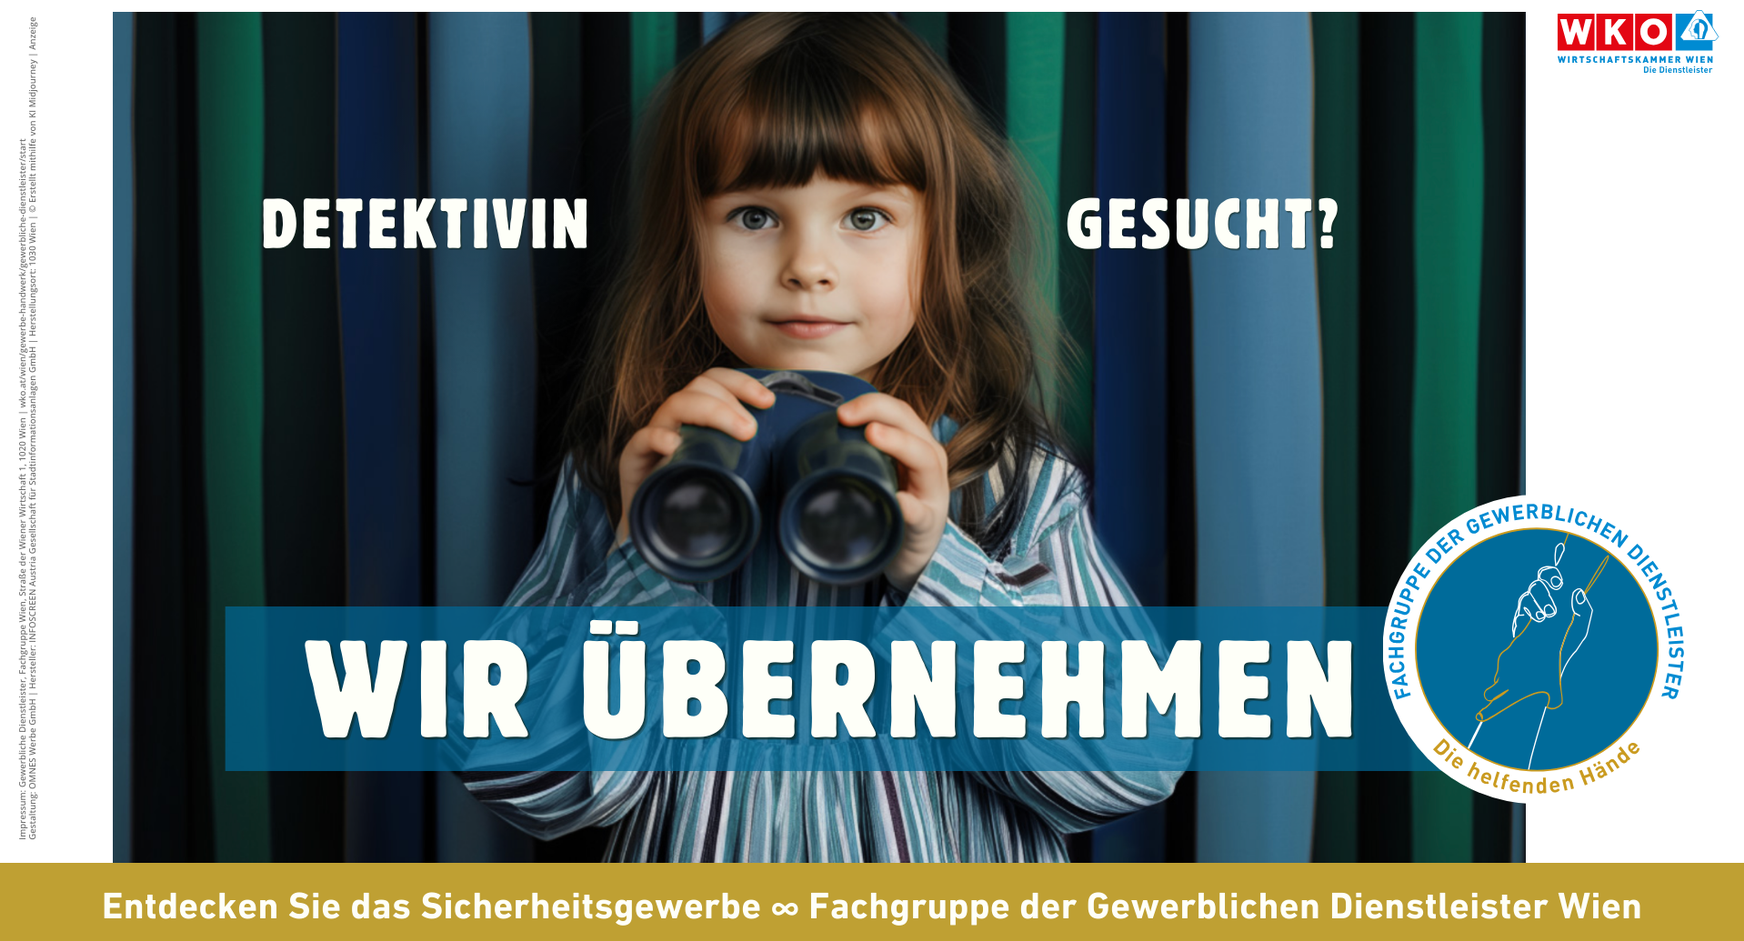 Werbe- und Imagekampagne „Wir übernehmen“<br />
